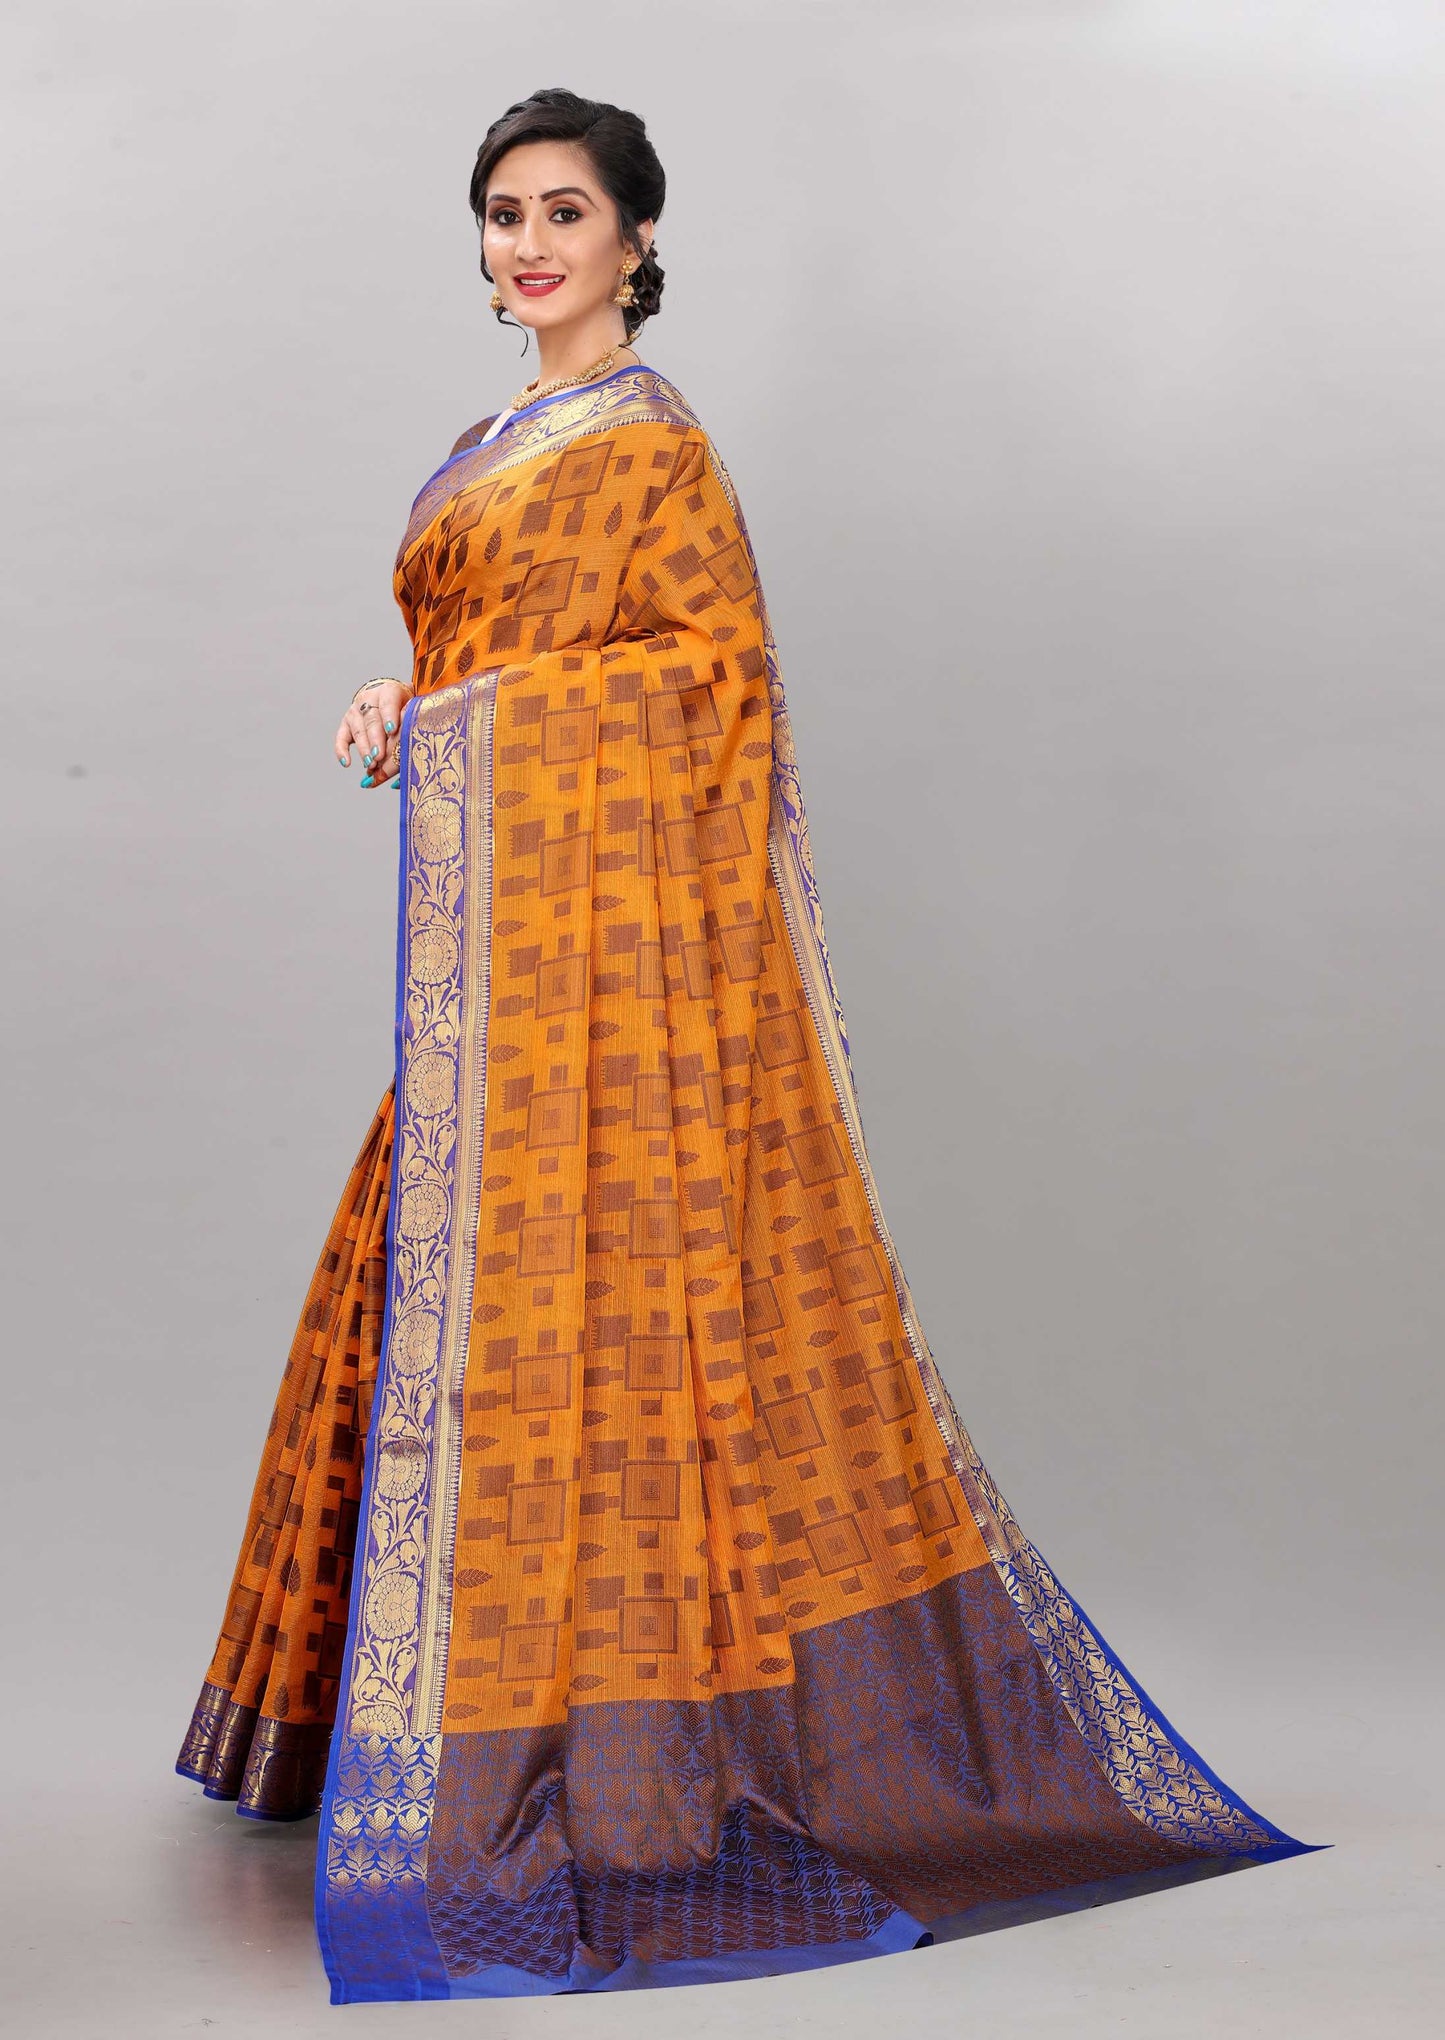 Blue and Light Orange color banarasi silk saree